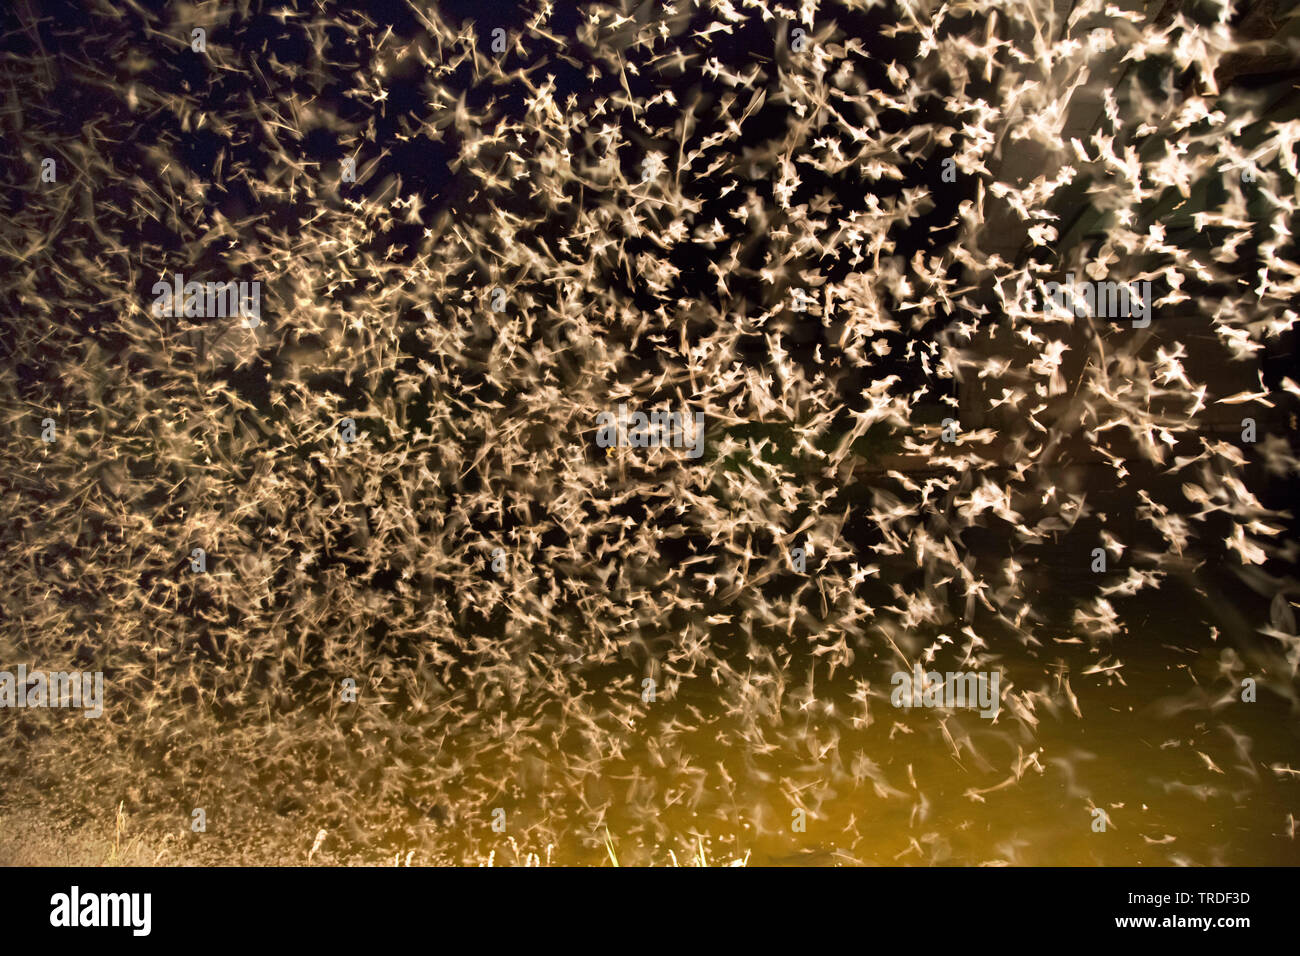 Virgin mayfly (Ephoron virgo, Polymitarcis virgo), mass hatching, flying swarm, Germany, Bavaria Stock Photo